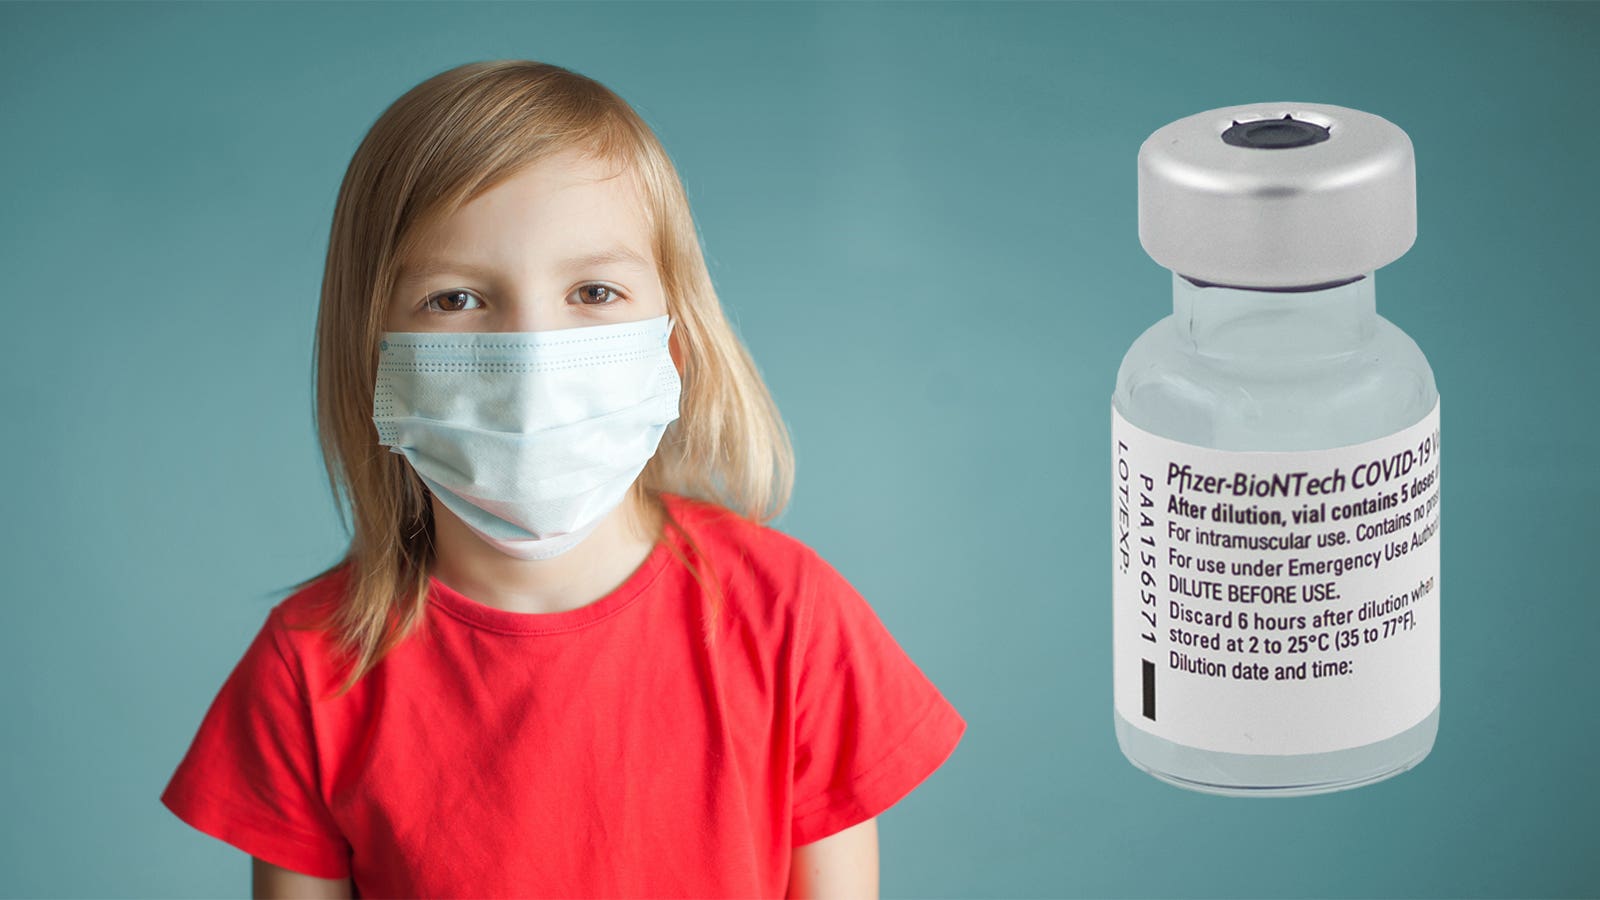 Những phản ứng trẻ 5-11 tuổi có thể gặp sau tiêm vắc xin ngừa Covid-19